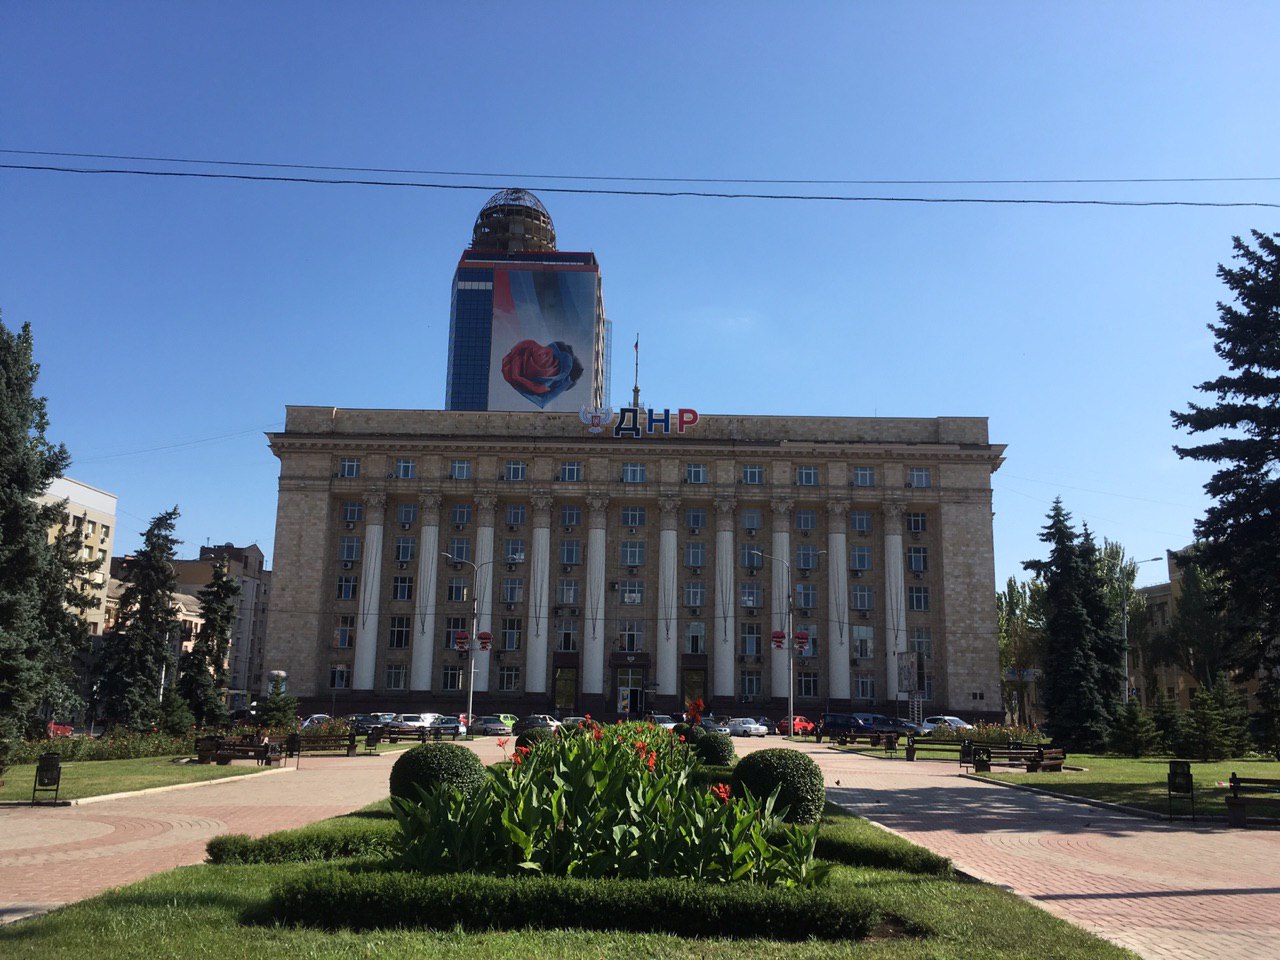 Вид с площади имени Ленина на здание бывшего министерства угля, теперь в нем расположены редакции газет, проводятся пресс-конференции, август 2019 года. Фото Spektr.Press